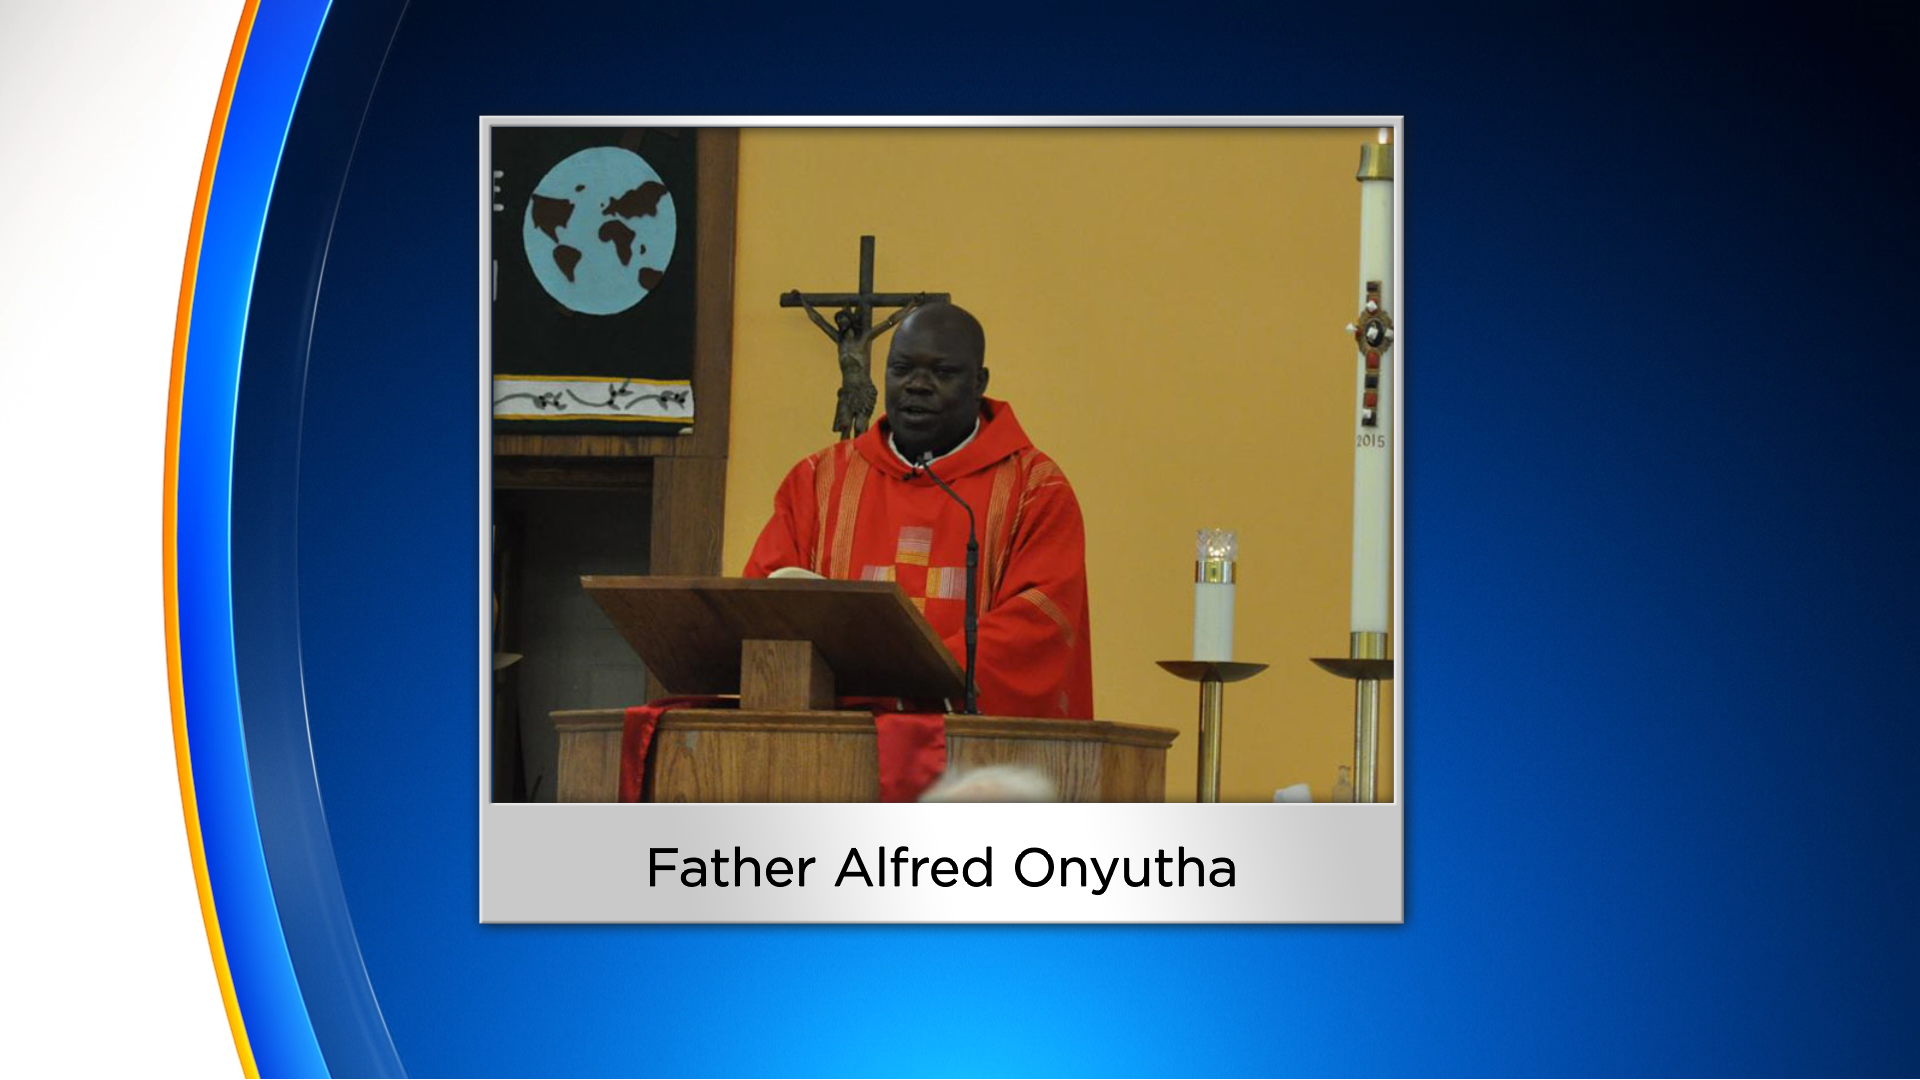 Father Alfred Onyutha